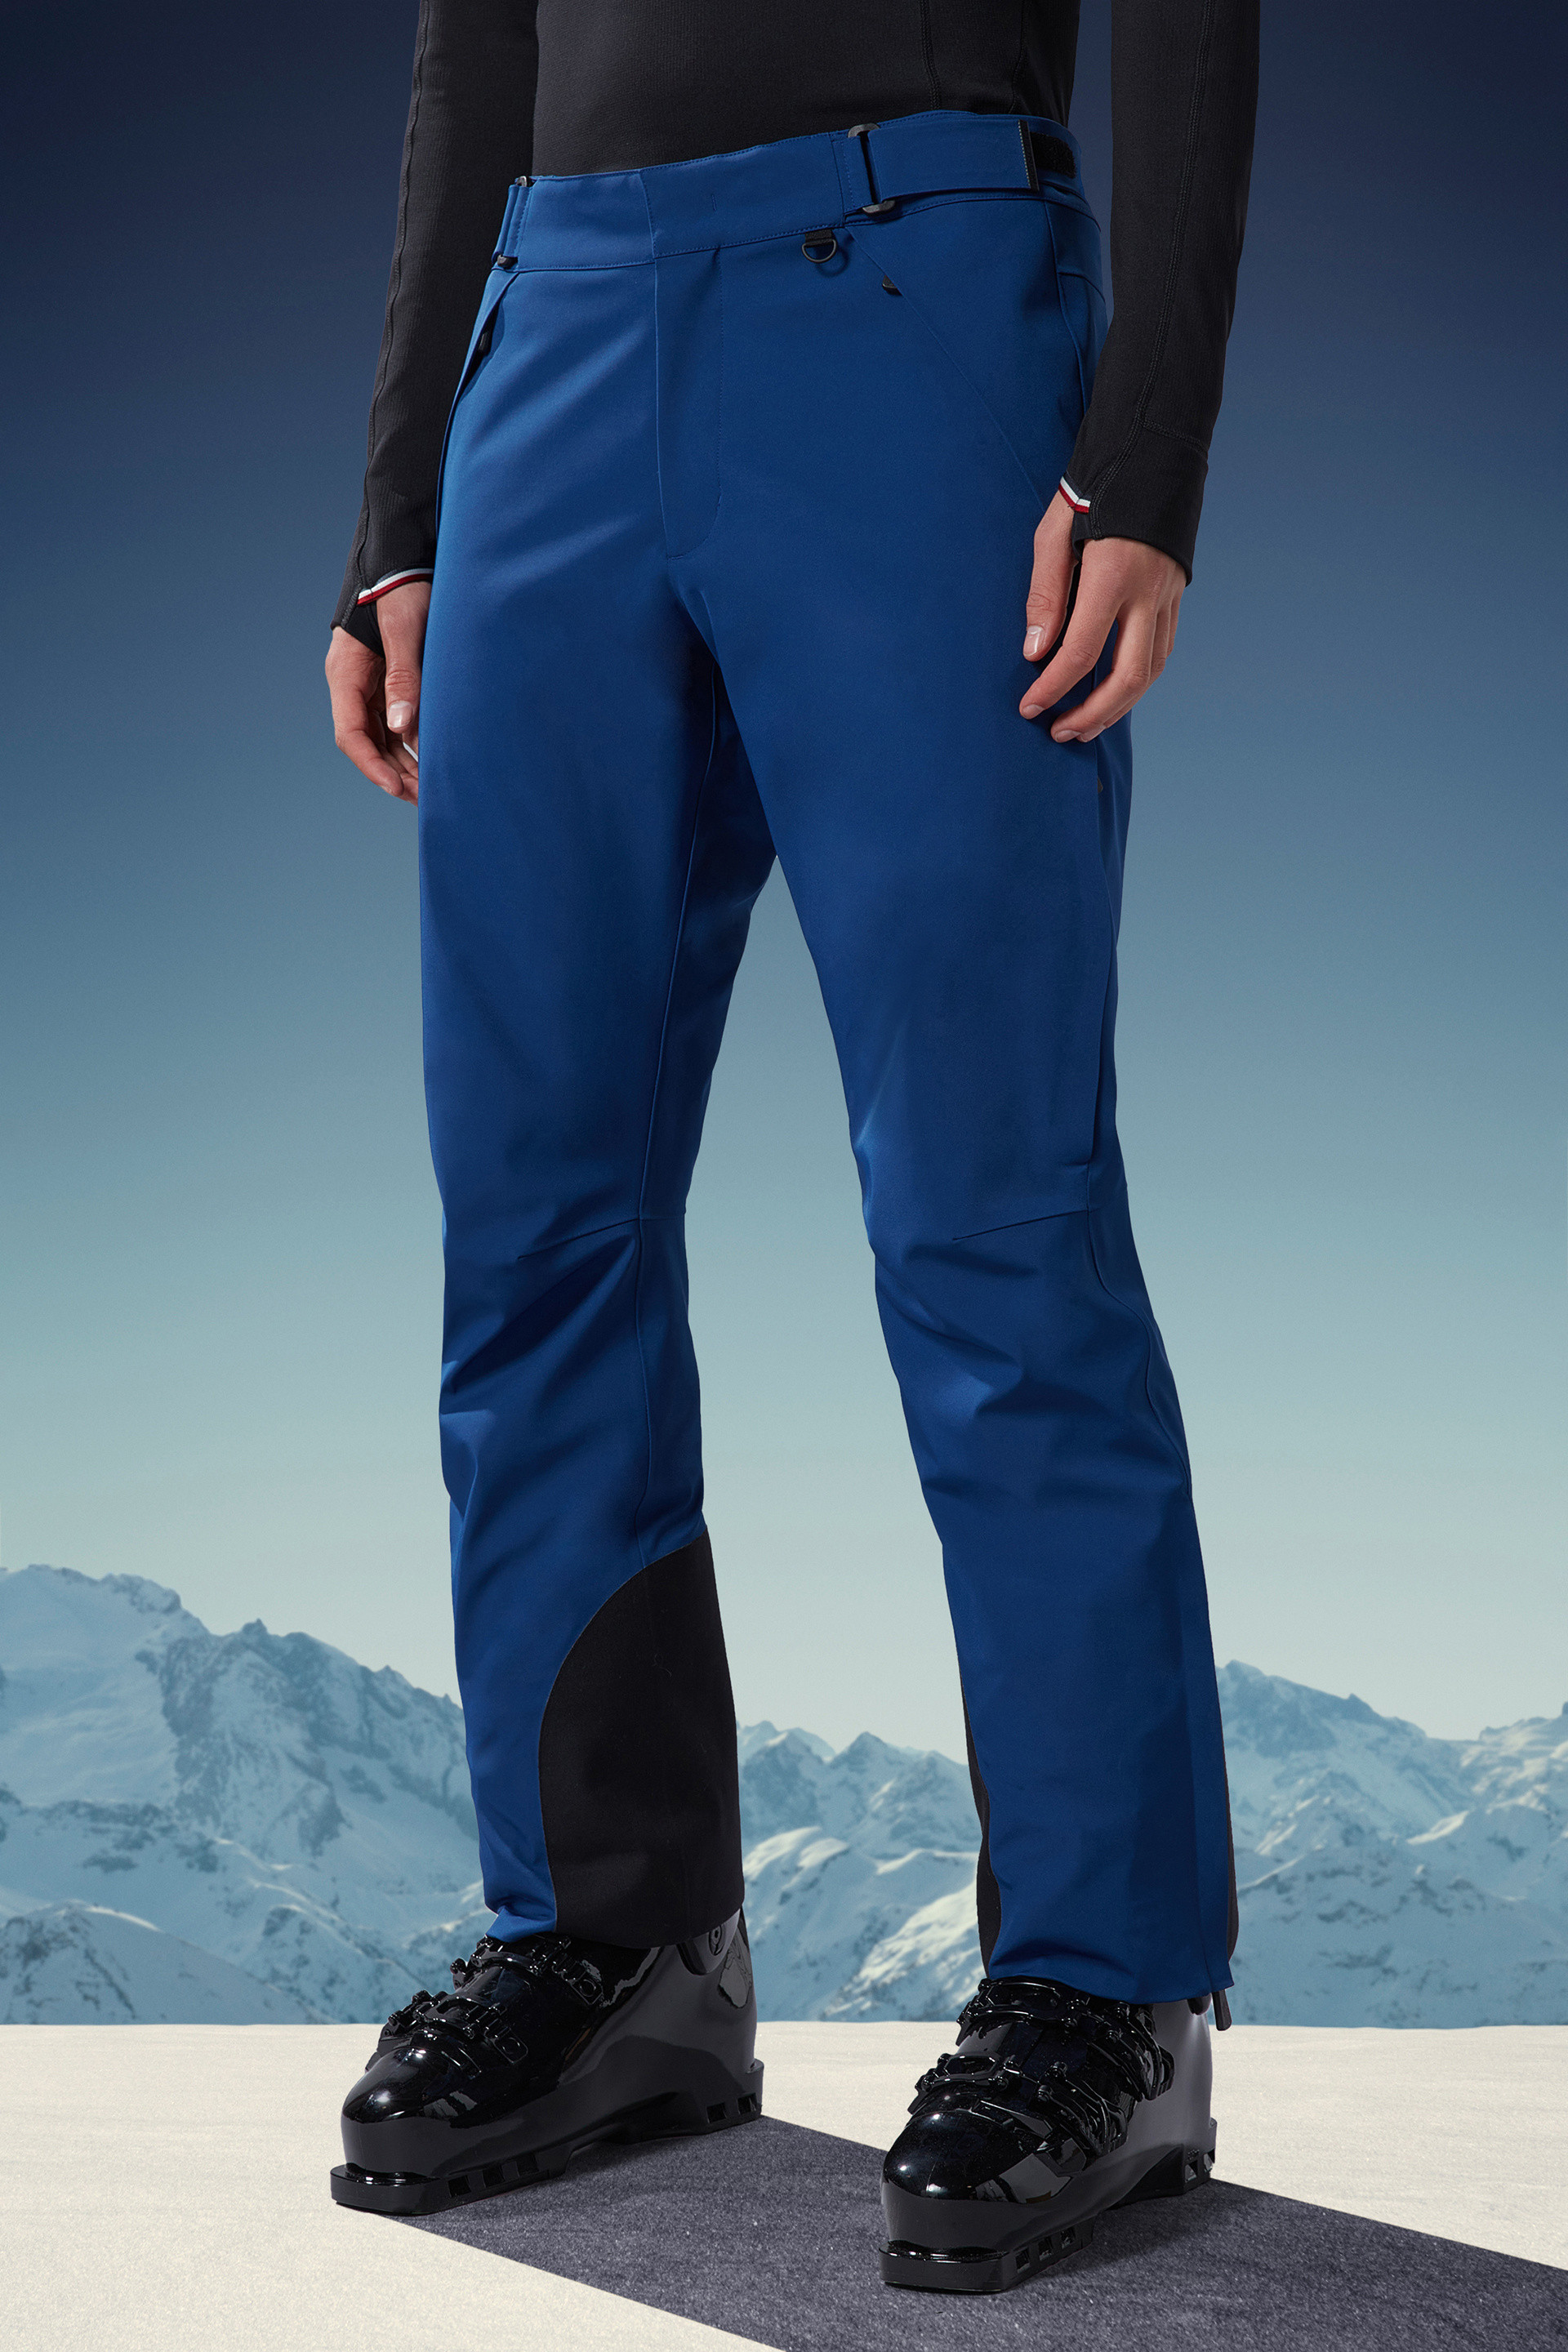 Men’s Ski Pants - 900 Warm Blue